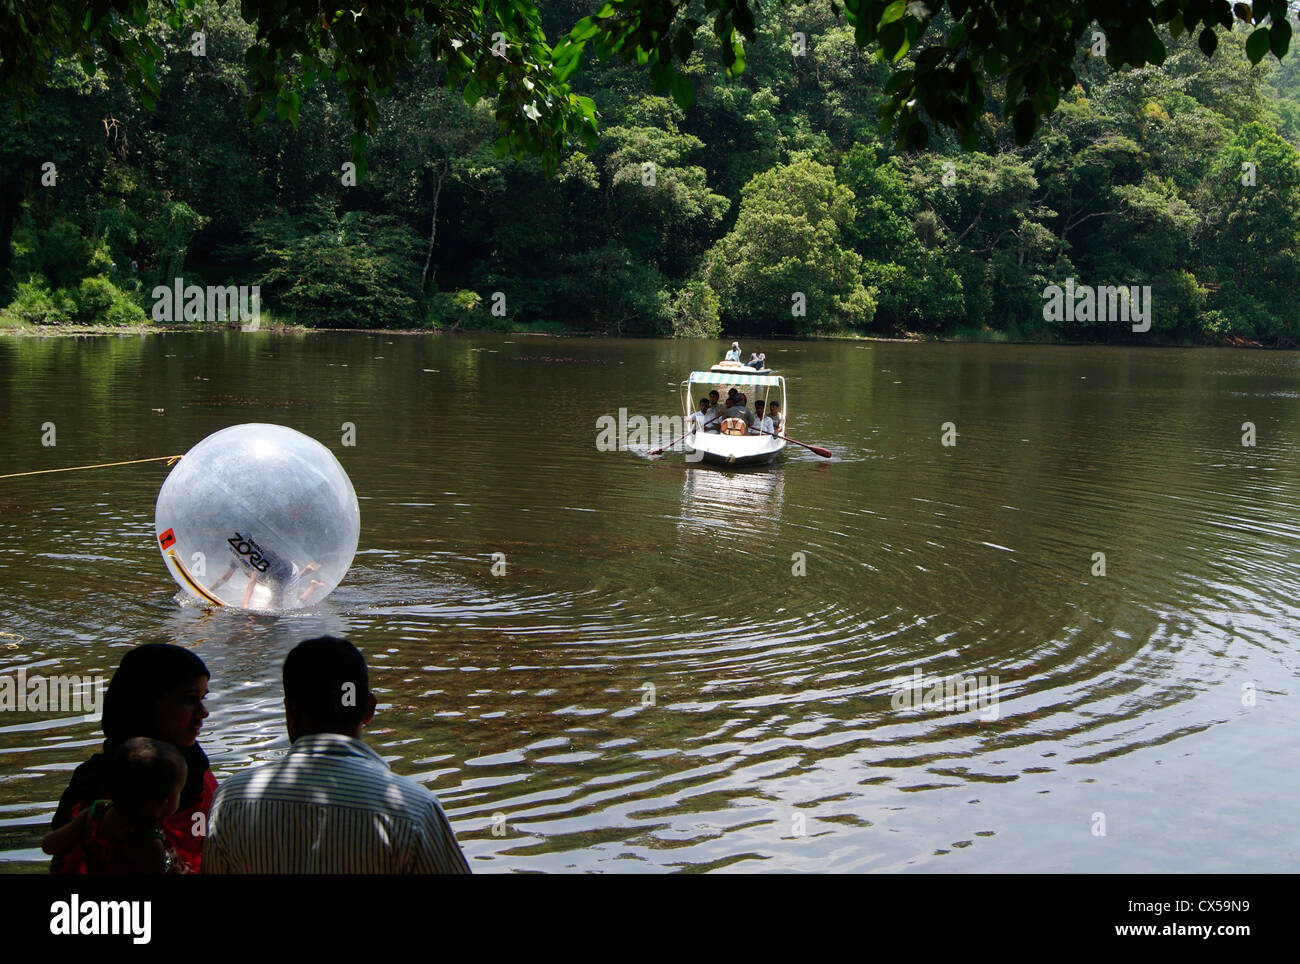 Pookode o lago pookot scenic laghi di acqua dolce in Wayanad a Kerala India circondato da foreste.Nautica e sfera zorbing nel lago Foto Stock